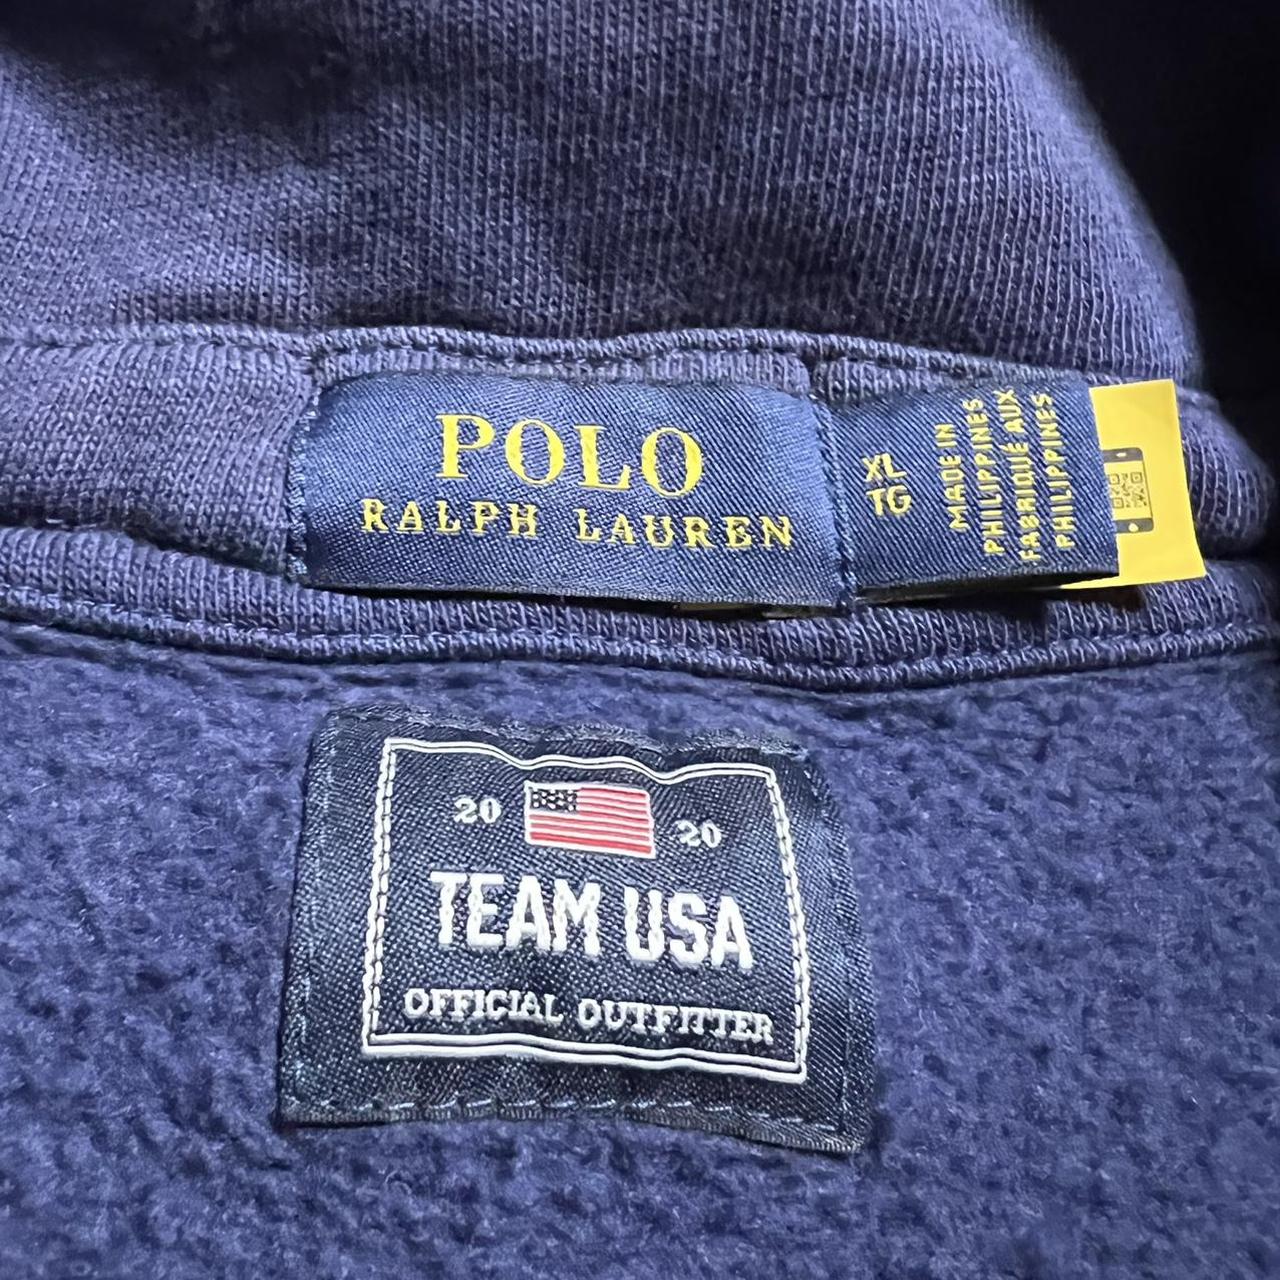 2020 Polo Ralph Lauren Team USA Quarter Zip... - Depop